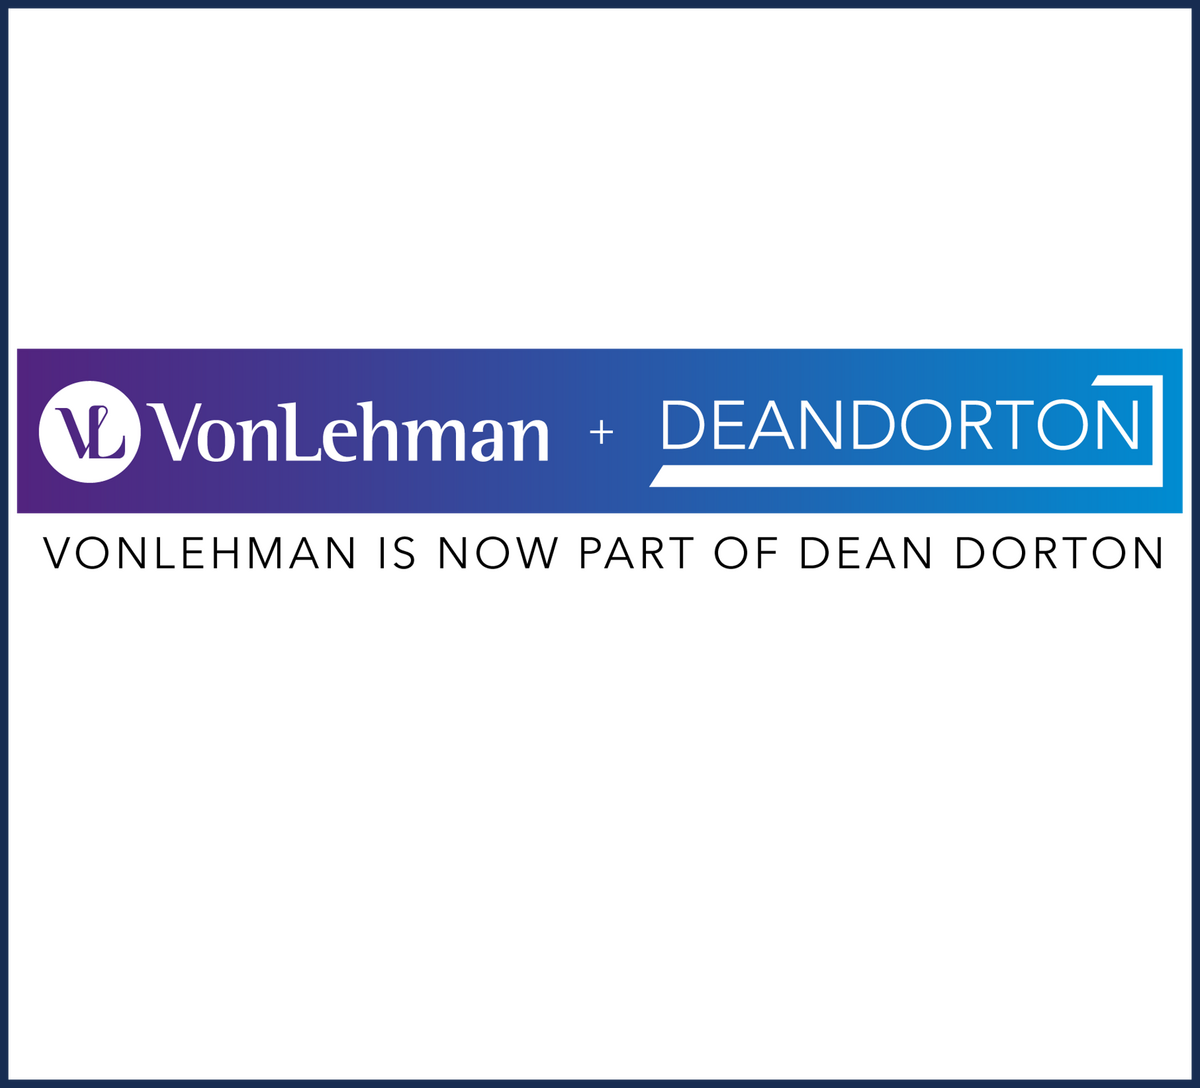 VonLehman + Dean Dorton